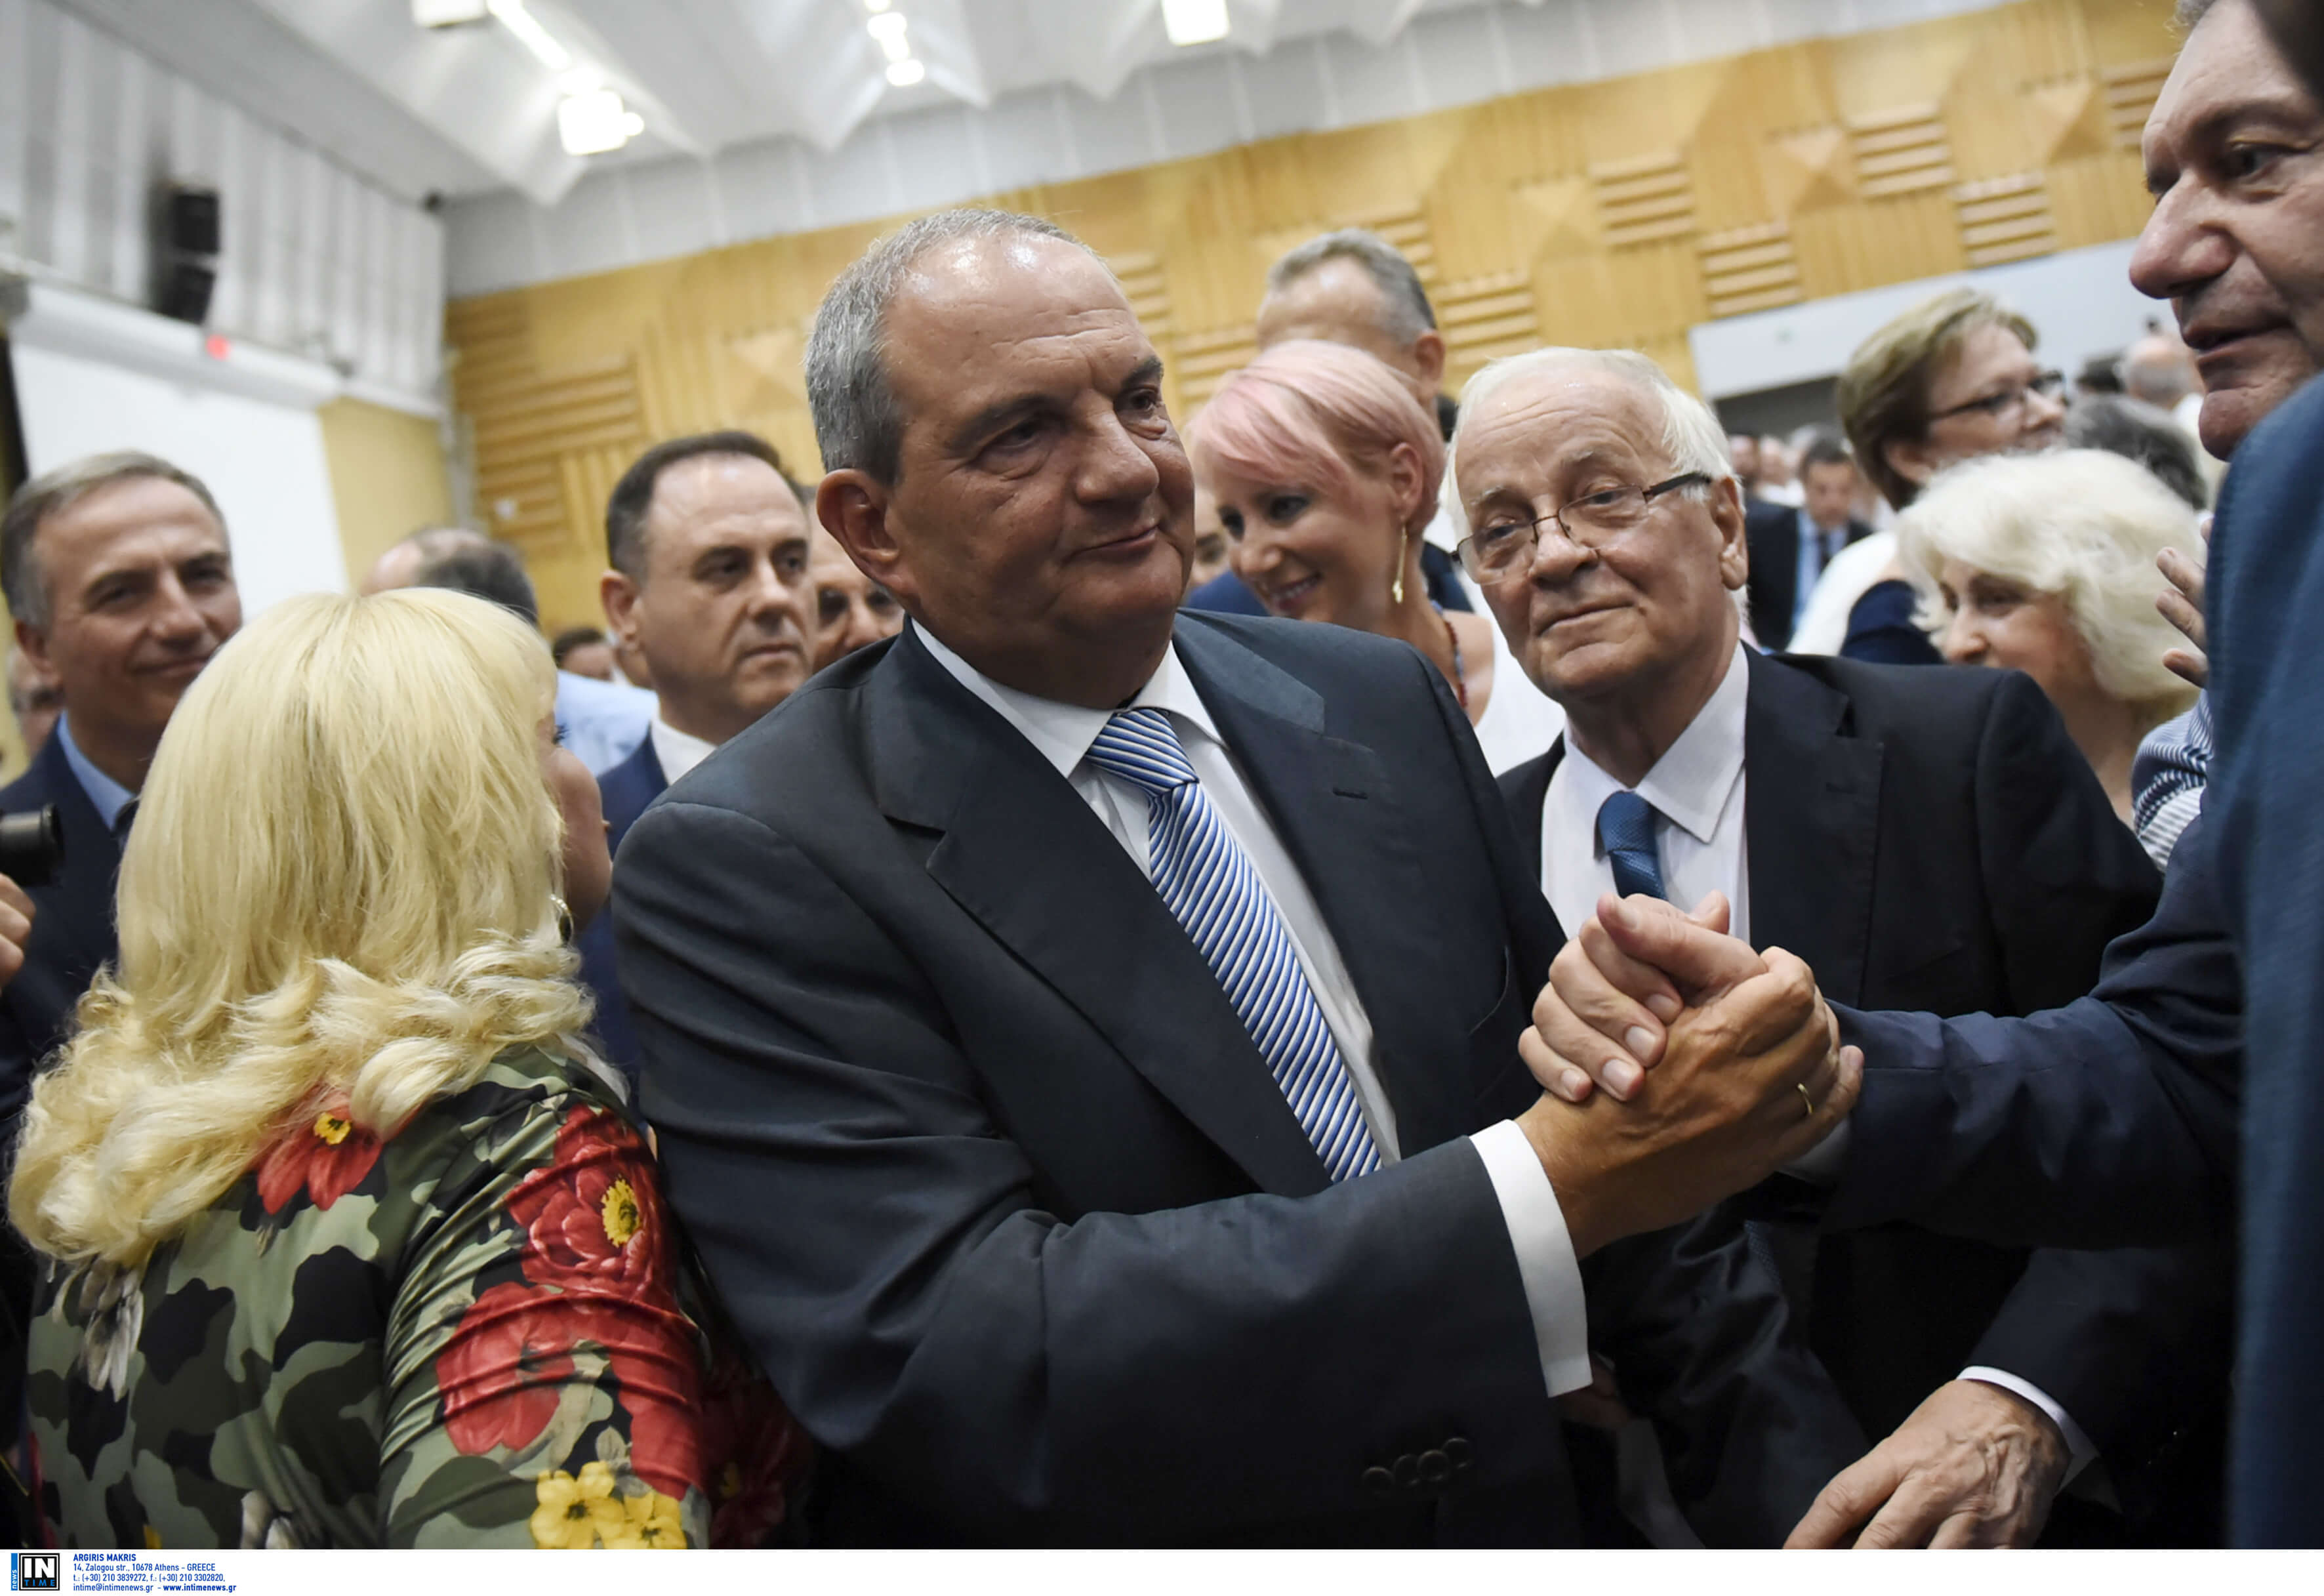 Εκλογές 2019: Ο Κώστας Καραμανλής ξεκίνησε τις περιοδείες στη Θεσσαλονίκη – Οι σταθμοί του πρώην πρωθυπουργού!